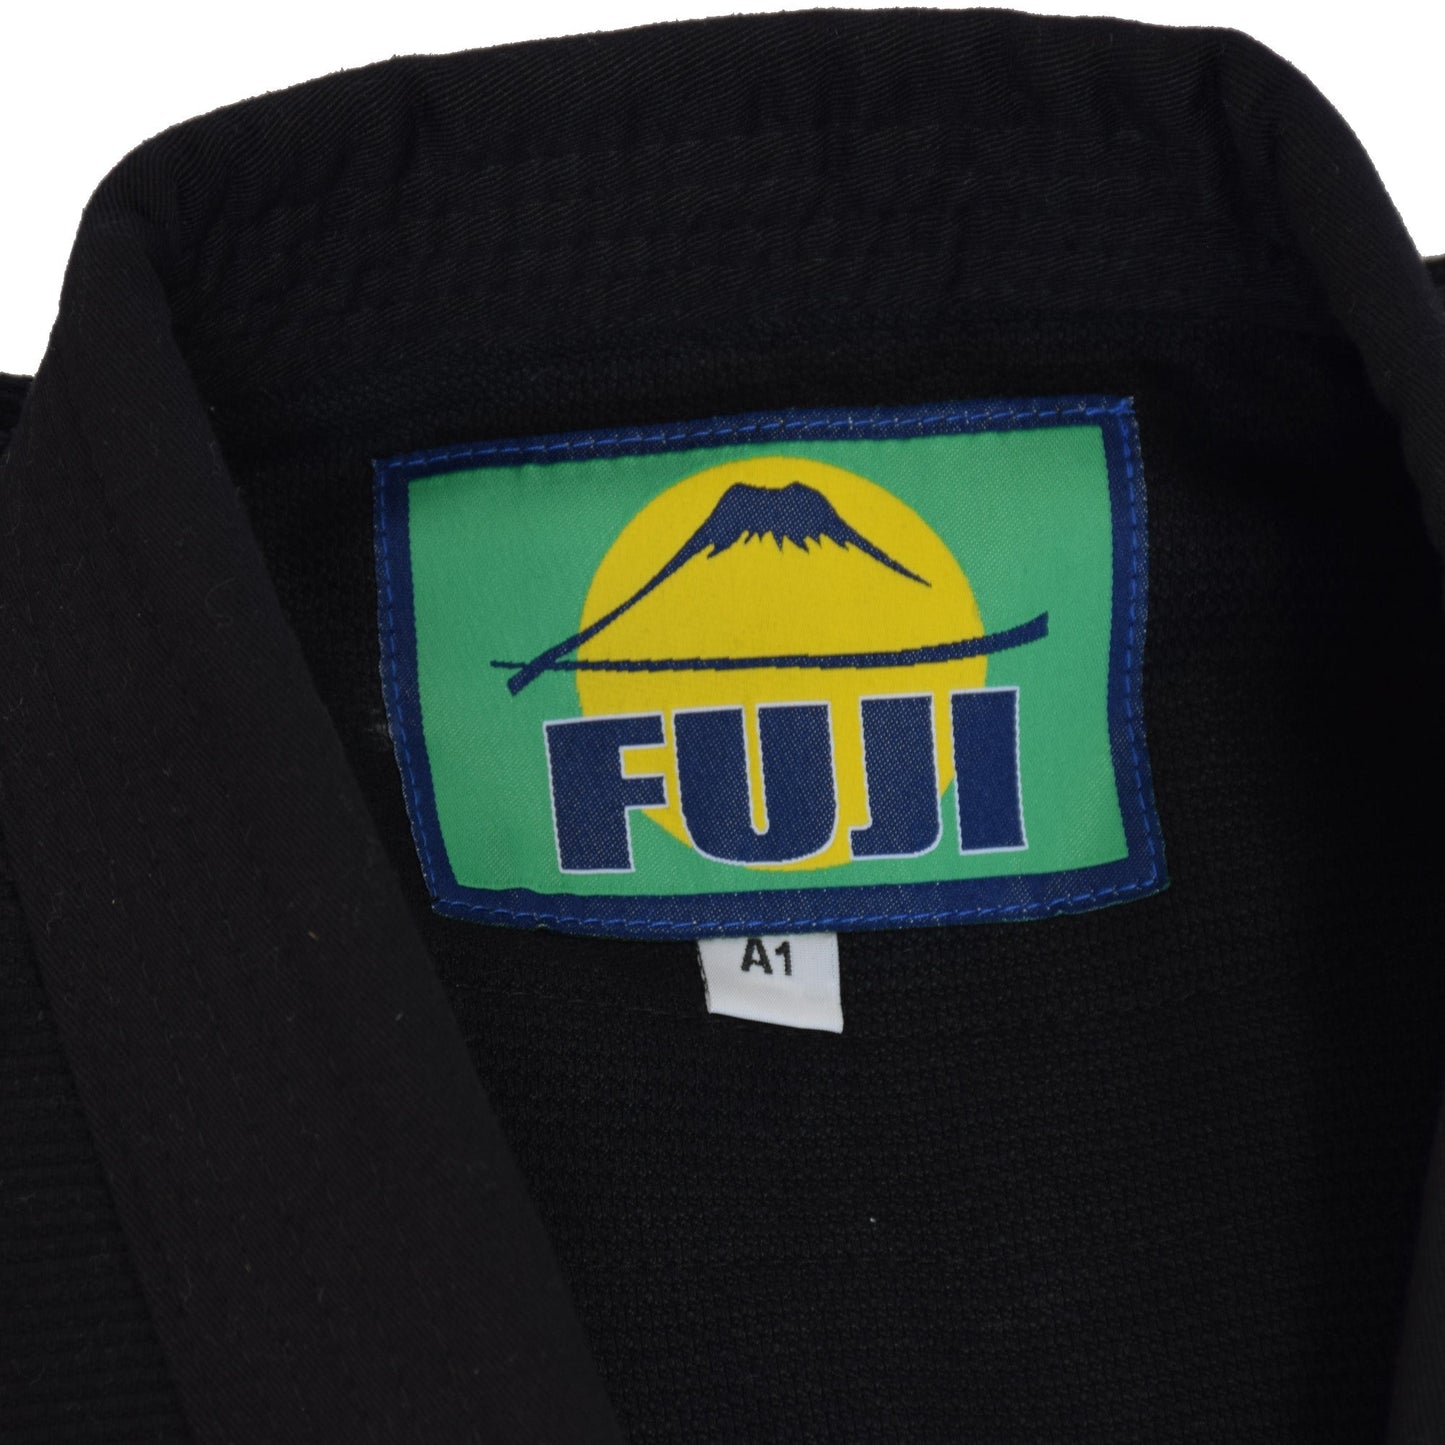 Fuji Student Brazilian Jiu Jitsu Gi